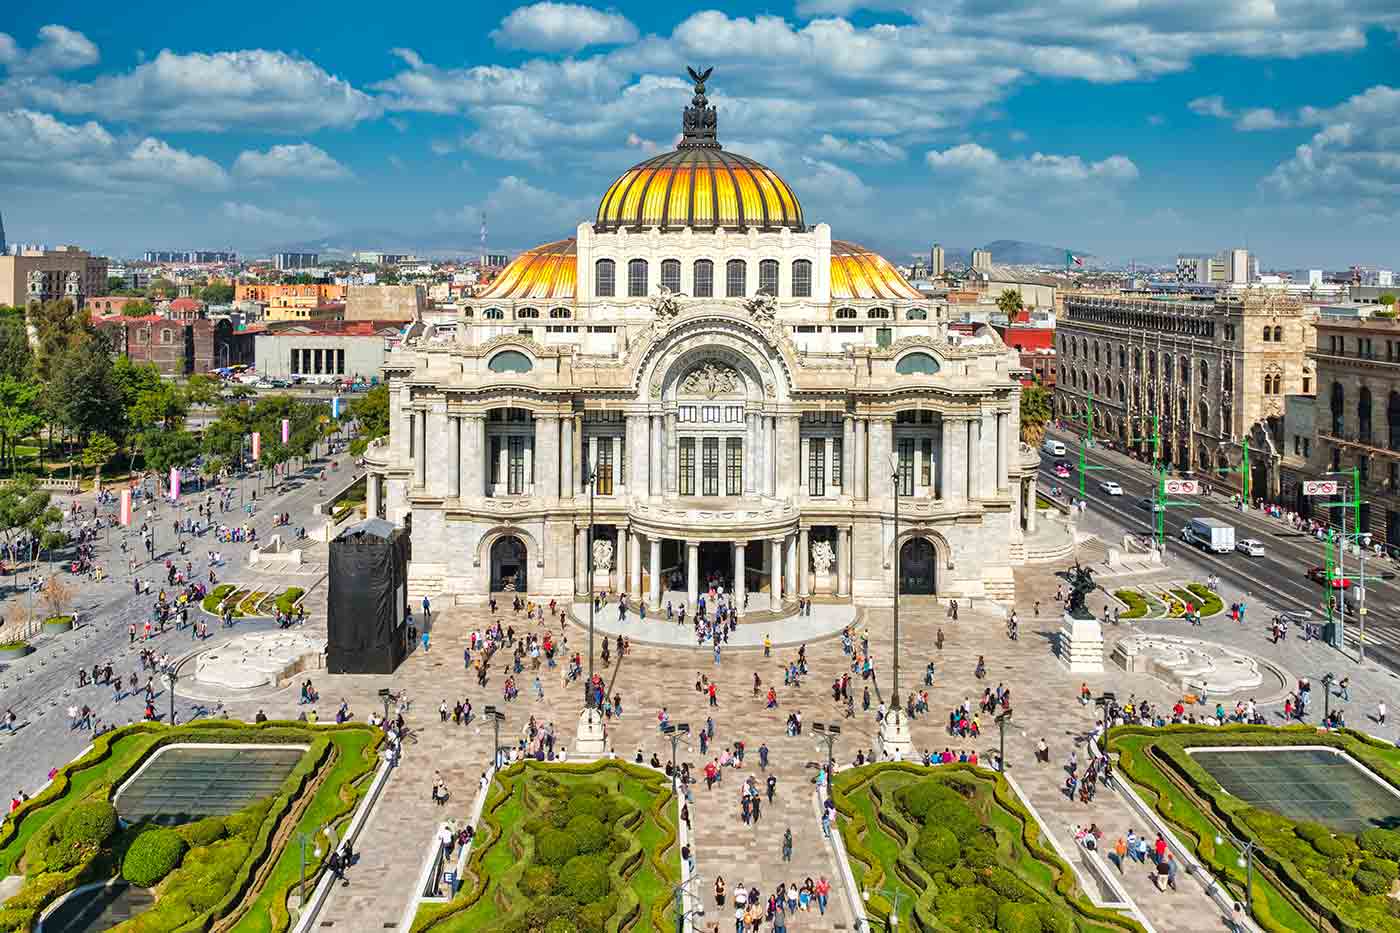 tourist location in mexico